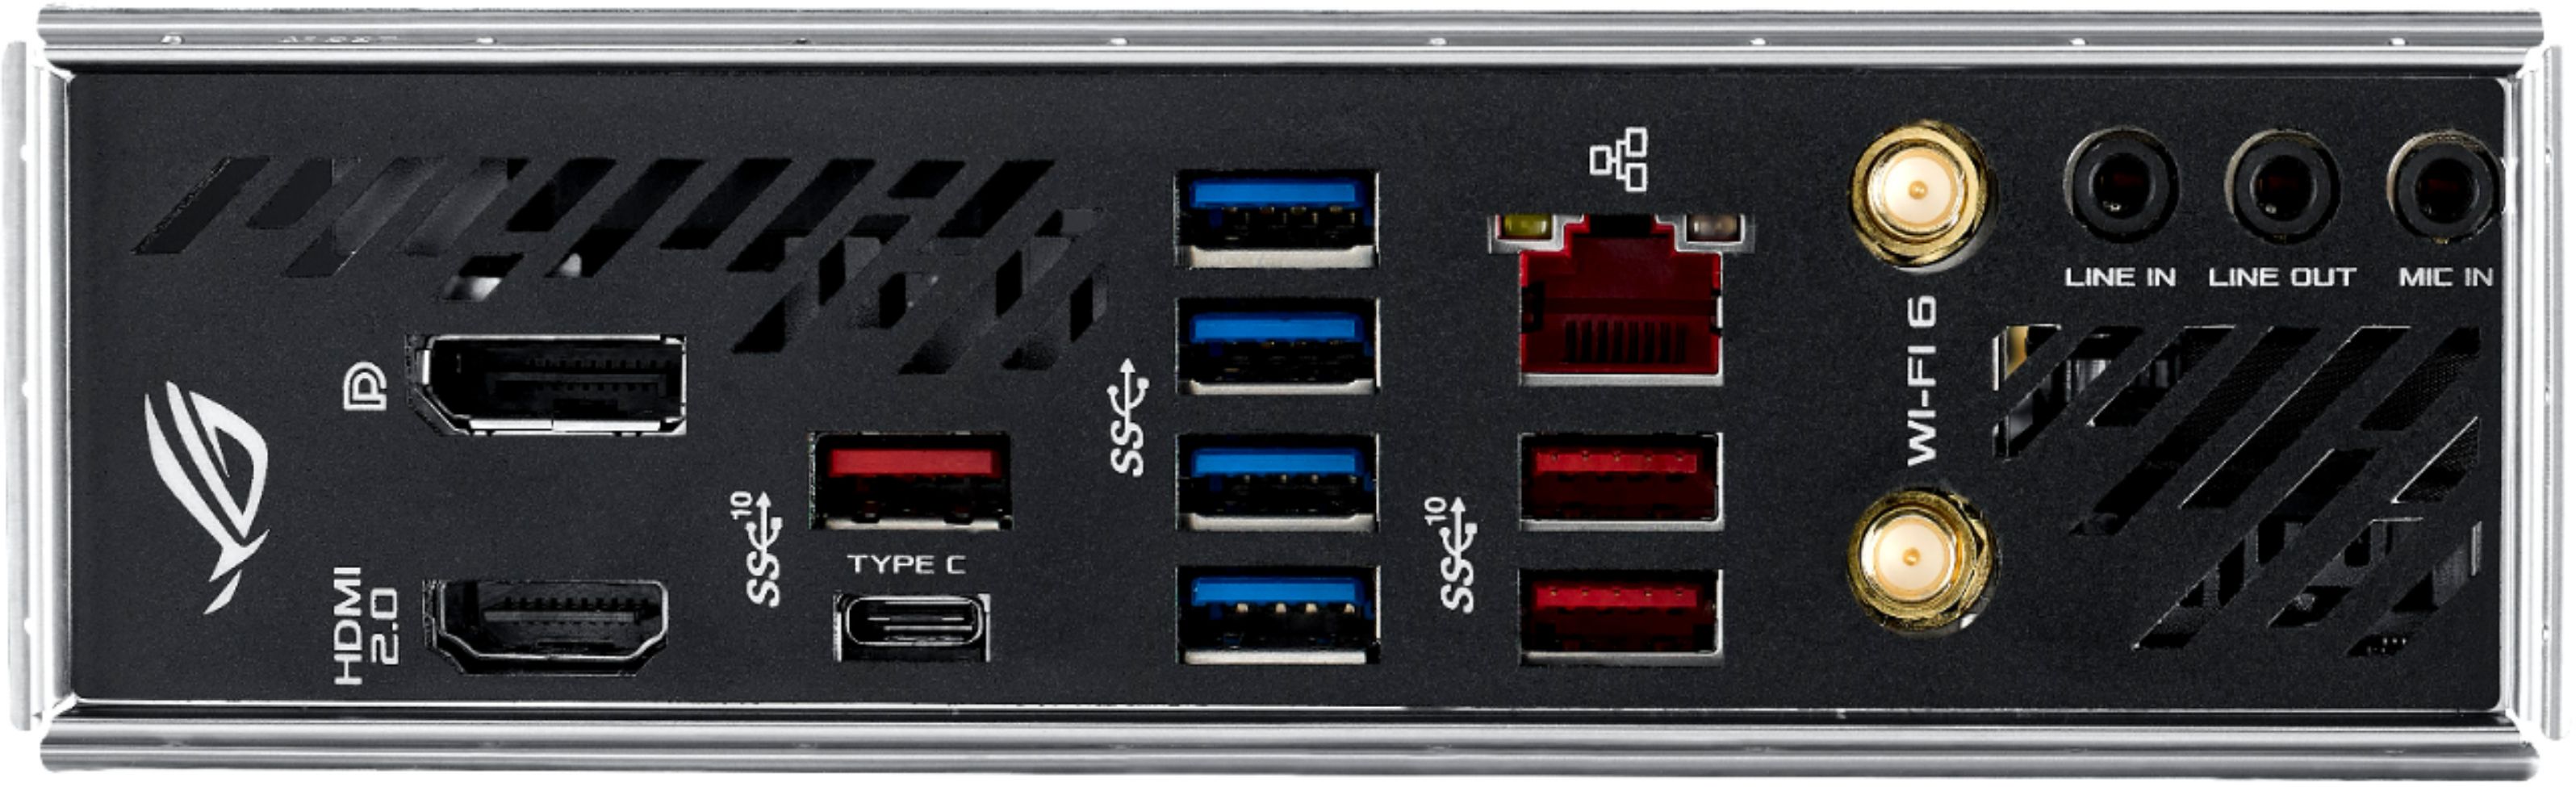 Asus Rog Strix X570 I Gaming Socket Am4 Usb C Gen2 Amd Motherboard With Led Lighting Rog Strix X570 I Gaming Best Buy